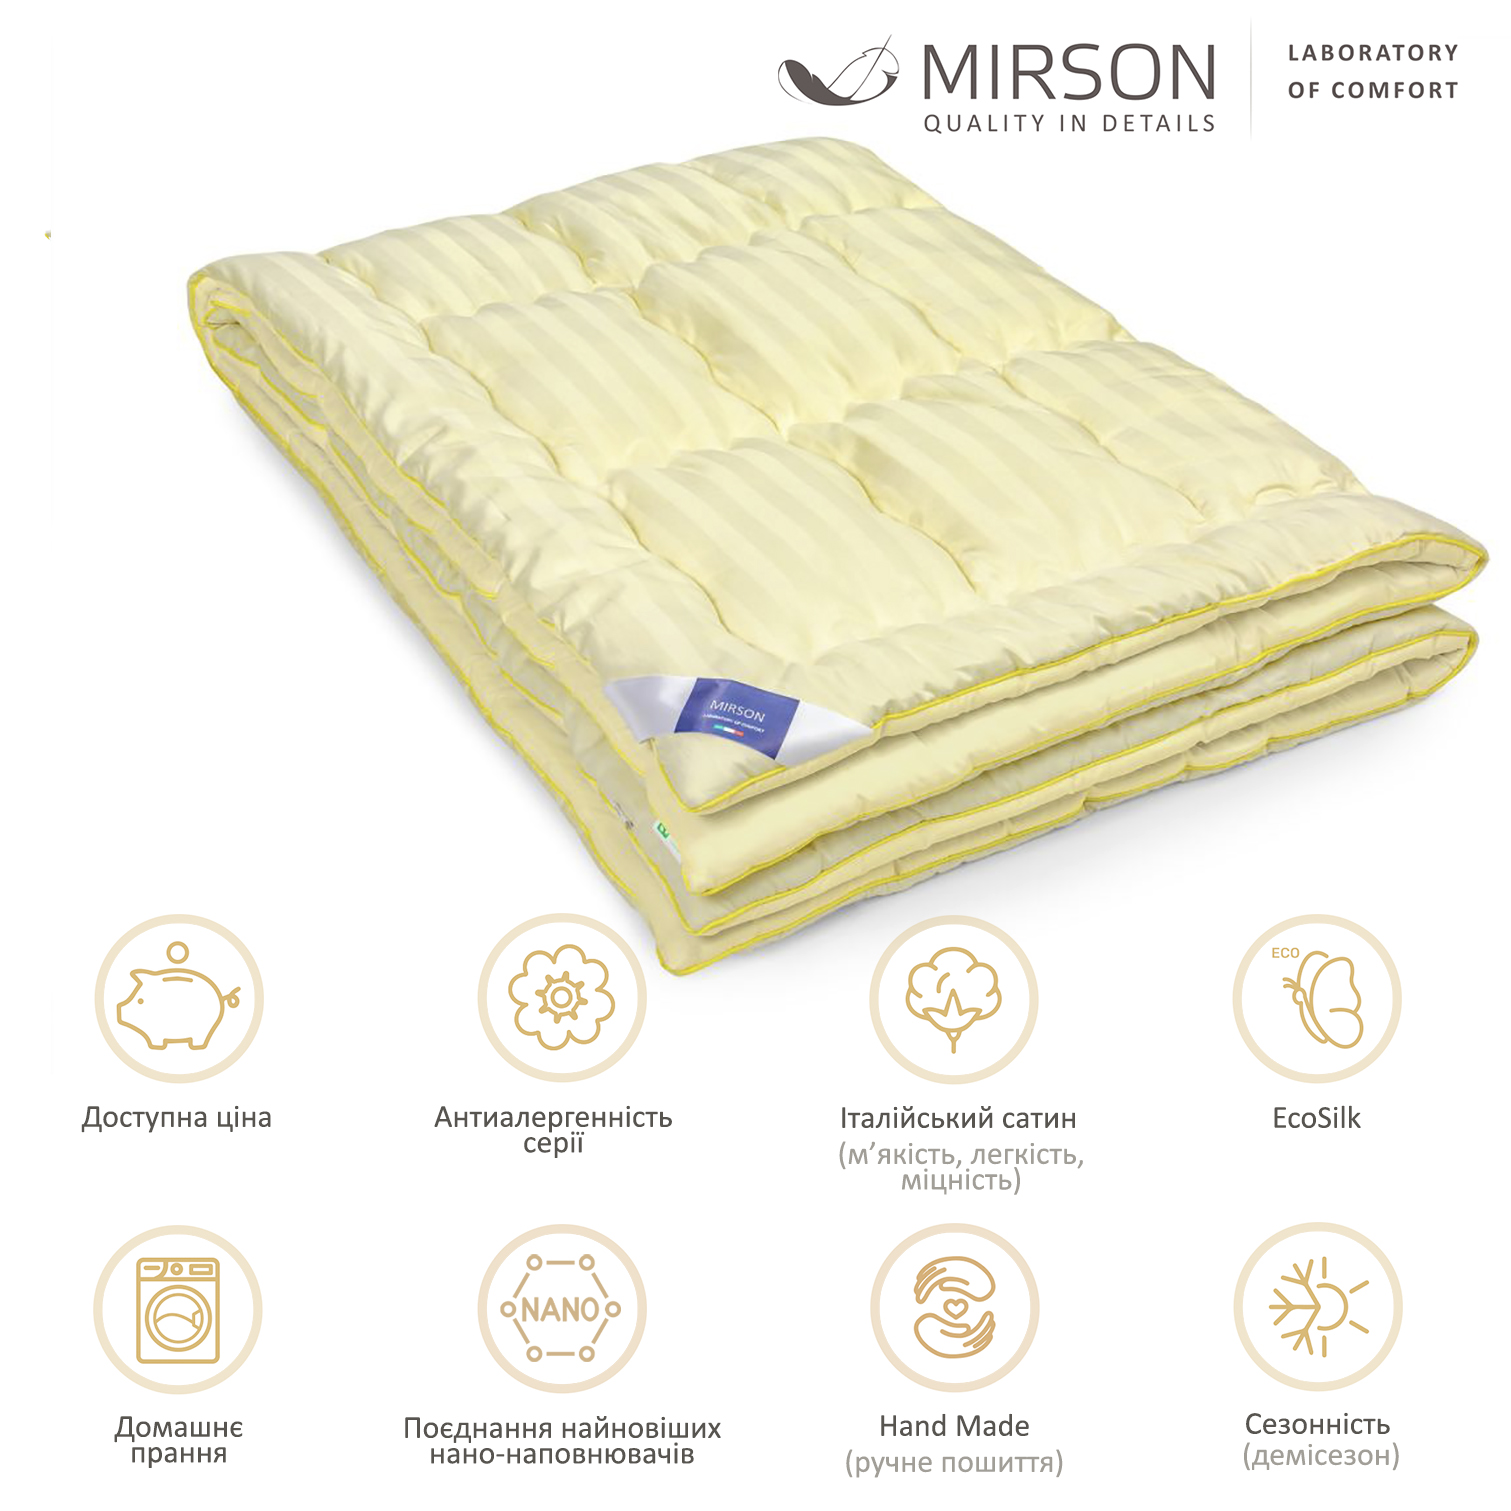 Одеяло антиаллергенное MirSon Carmela Hand Made EcoSilk №065, демисезонное, 140x205 см, светло-желтое - фото 4